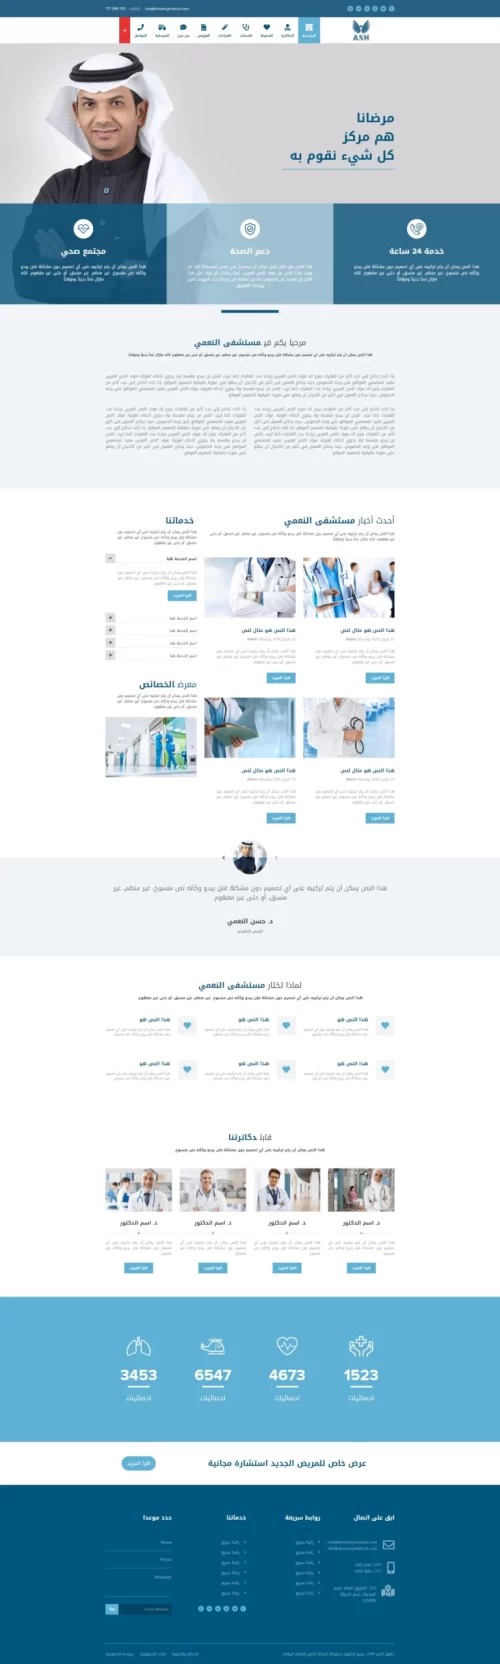 تصميم موقع مستشفى دكتور حسن النعمي - الرئيسية